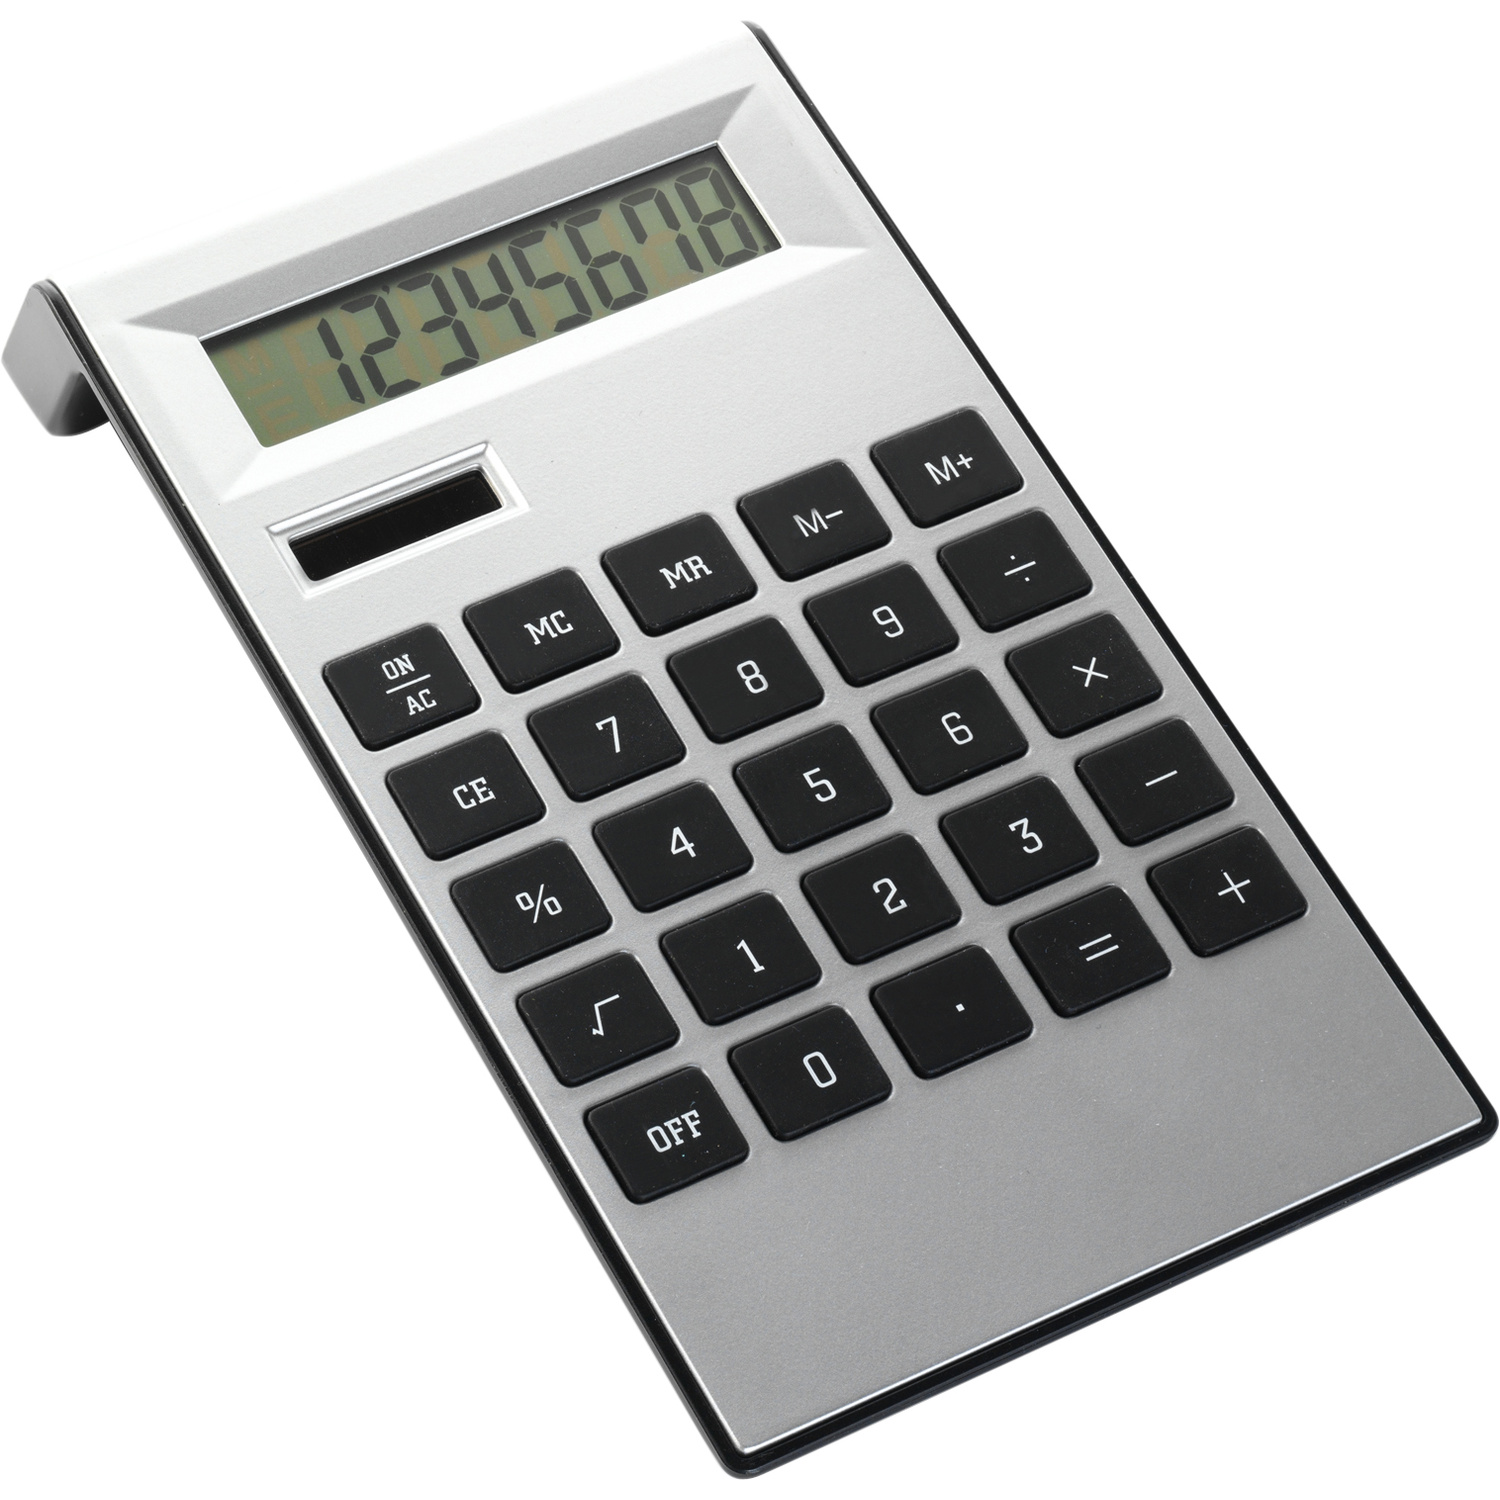 004050 050999999 3d135 frt pro01 fal - Desk calculator